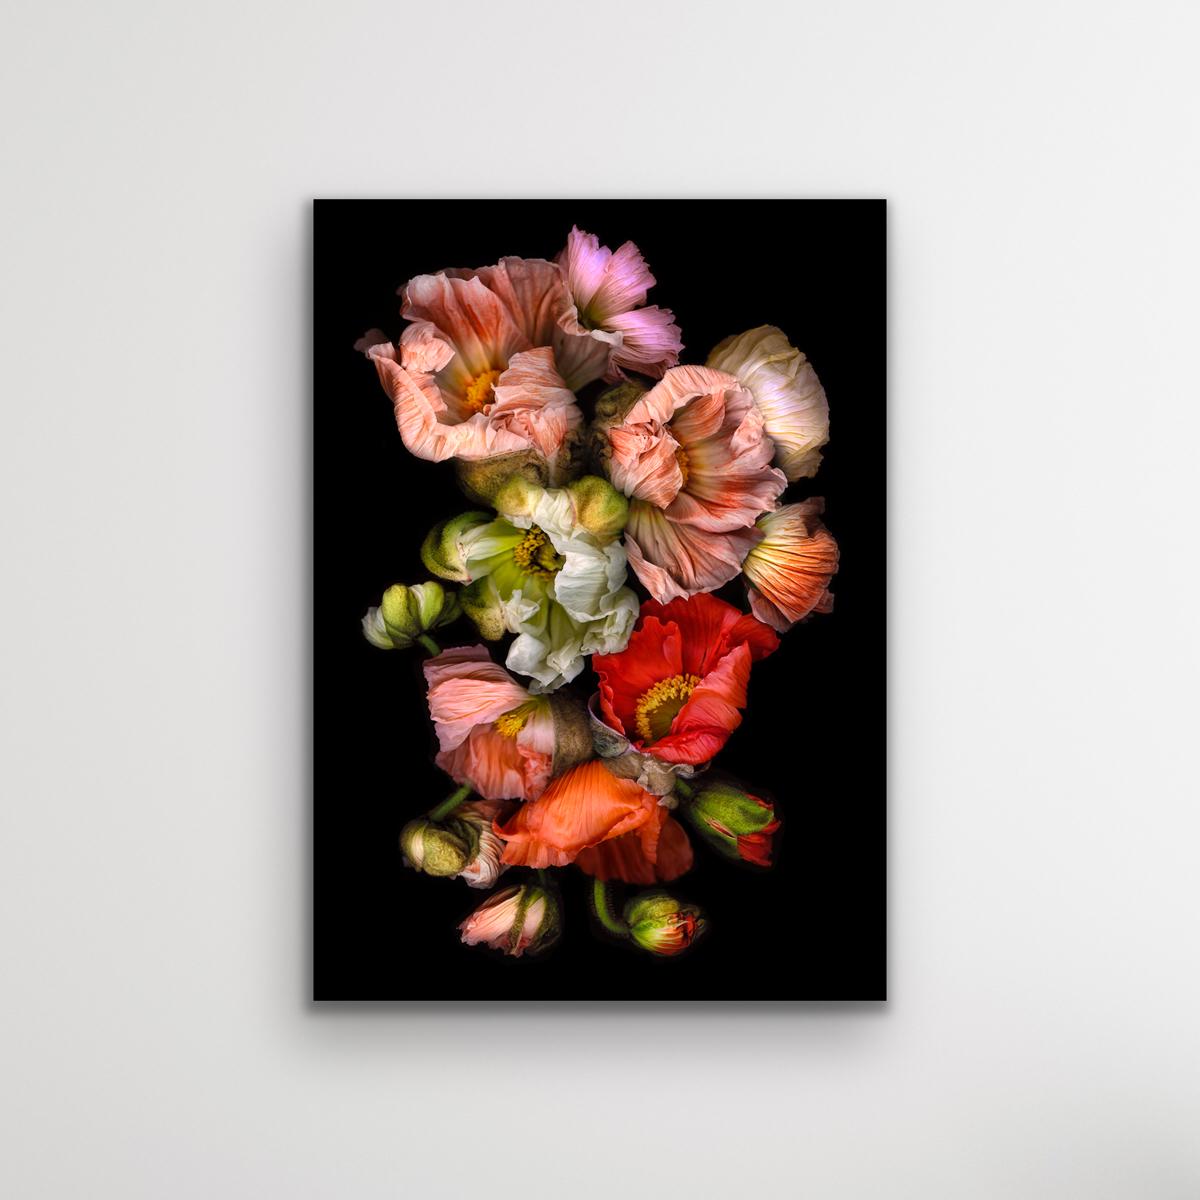 Schwarze Pelze, dramatische Fotografie, lebhafte florale Kunstwerke, Chromagenic-Druck (Realismus), Photograph, von Allan Forsyth